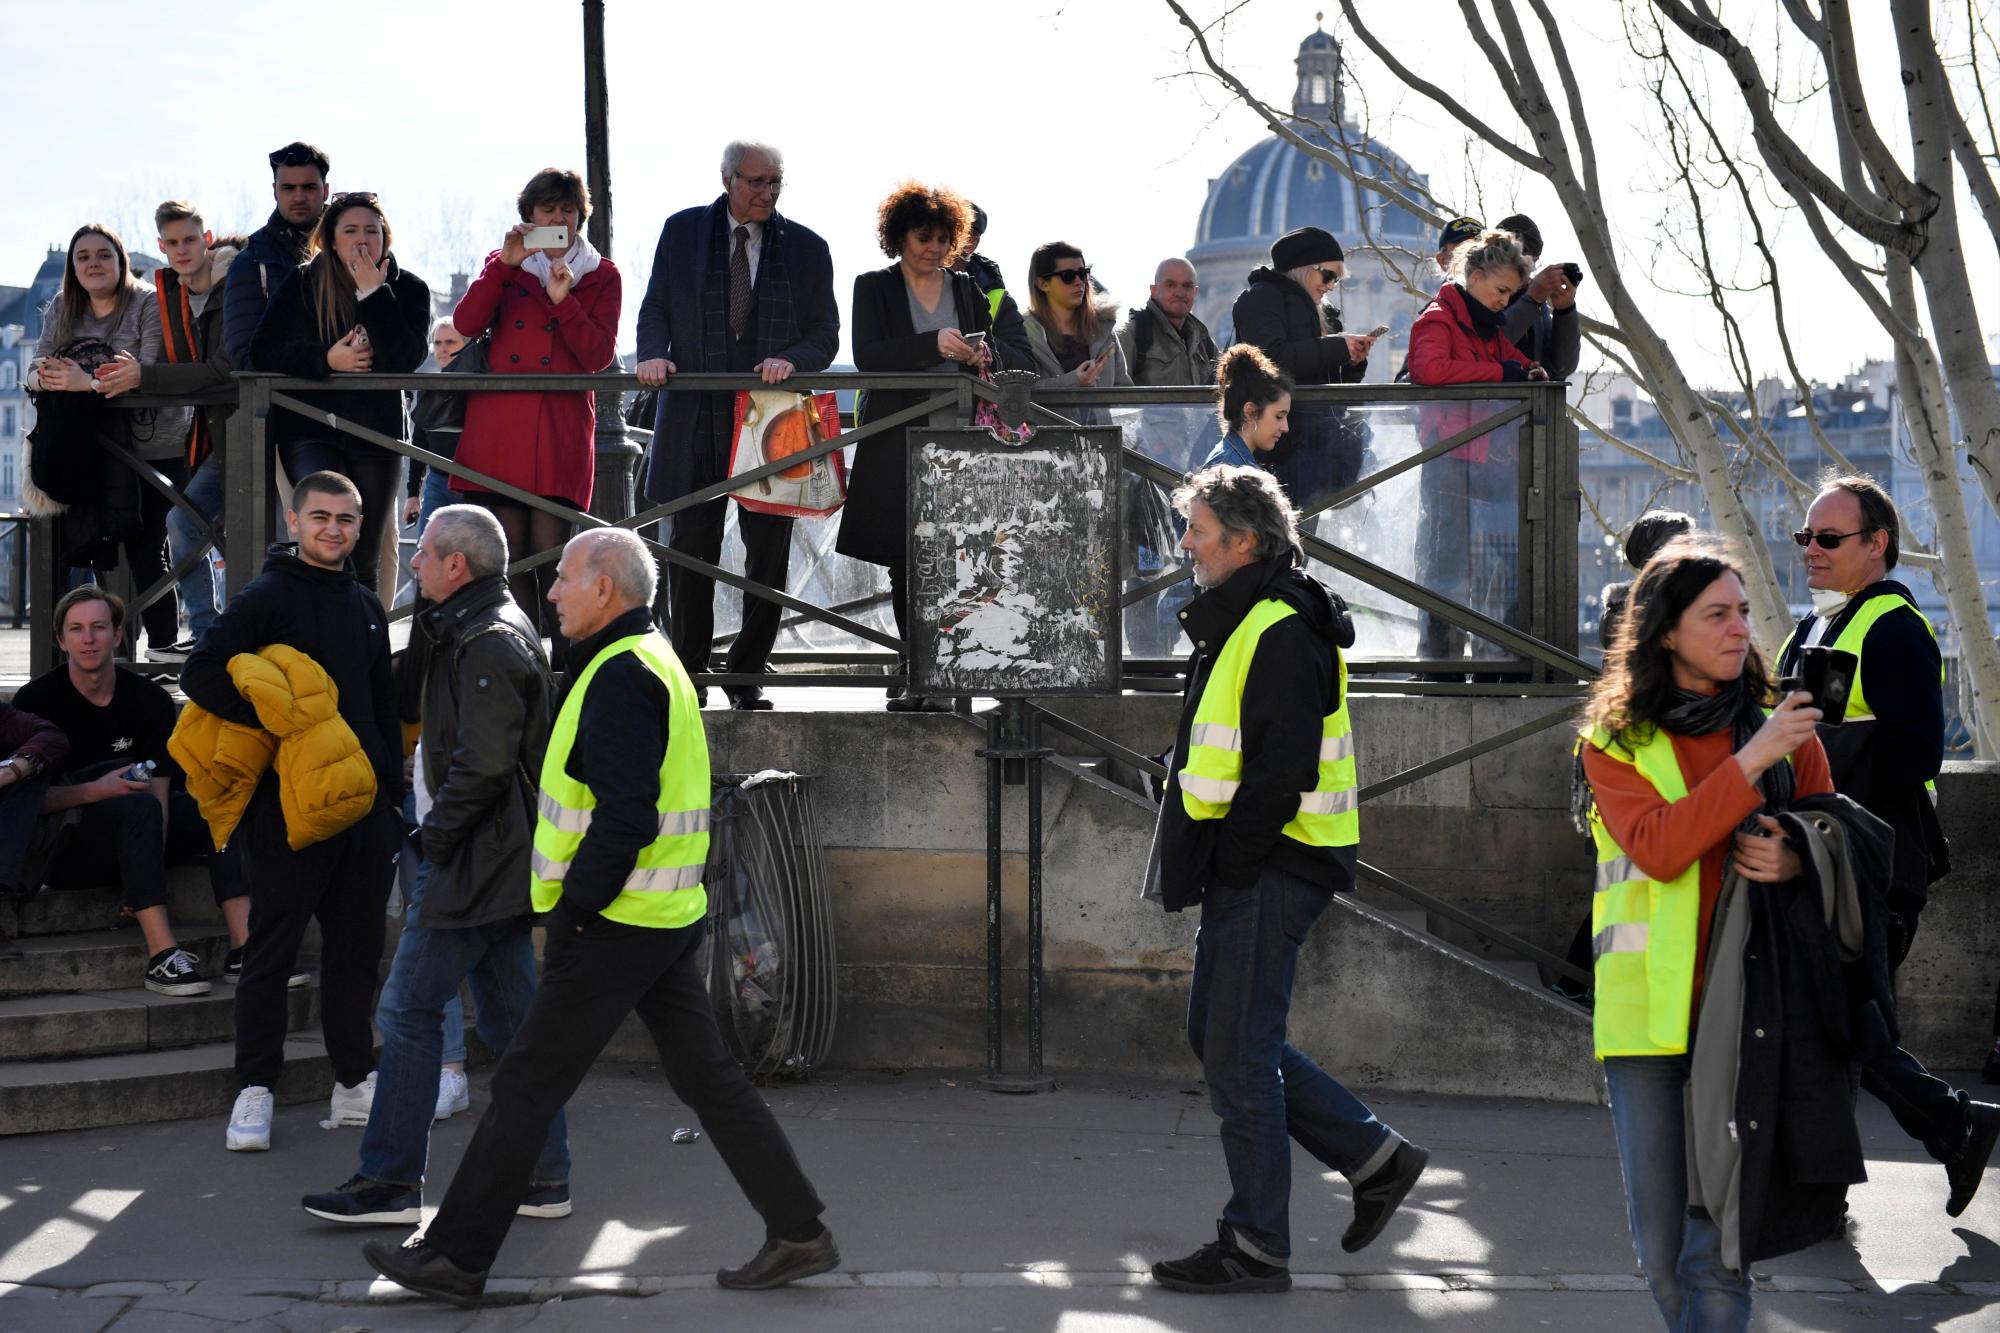 París (Francia), 16/02/2019.- La gente mira a los manifestantes del movimiento ‘Gilets Jaunes’ (chalecos amarillos) caminando por el río Sena durante la manifestación del ‘Acto XIV’ (la 14a protesta nacional consecutiva en un sábado) en París, Francia, 16 de febrero de 2019. El llamado ‘Gilets Jaunes’ es un movimiento de protesta popular con partidarios de una amplia gama del espectro político, que originalmente comenzó con una protesta en todo el país a fines de 2018 contra los altos precios del combustible.